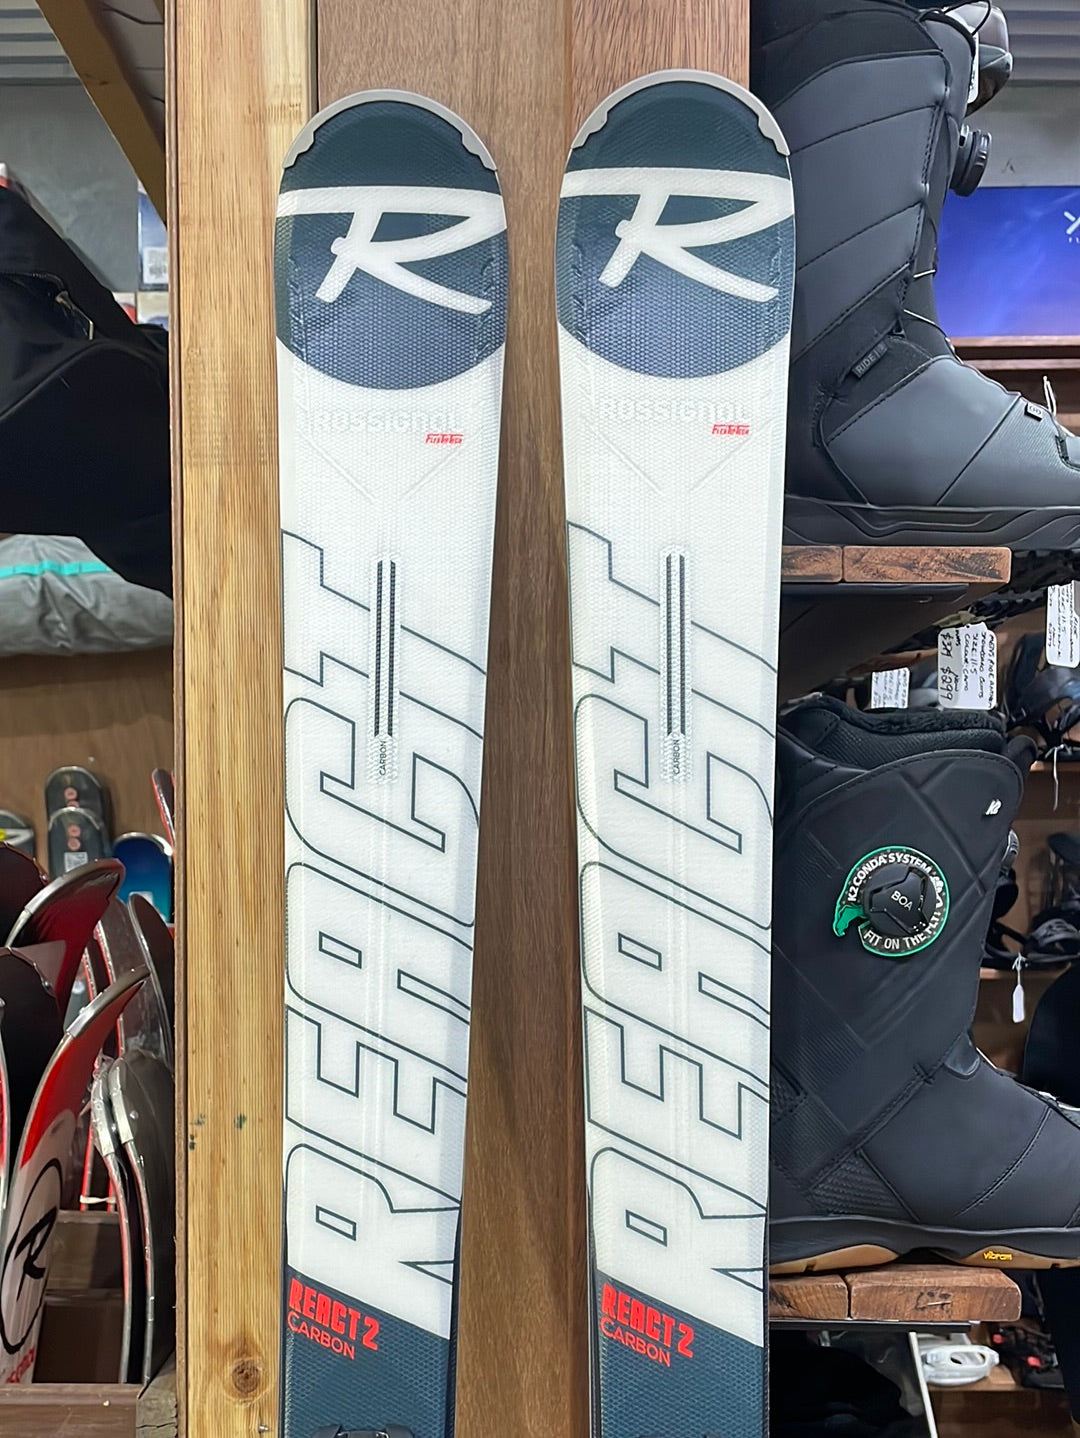 Skis Rossignol On Piste Skis React R2 Carbon 170cm - Bindings